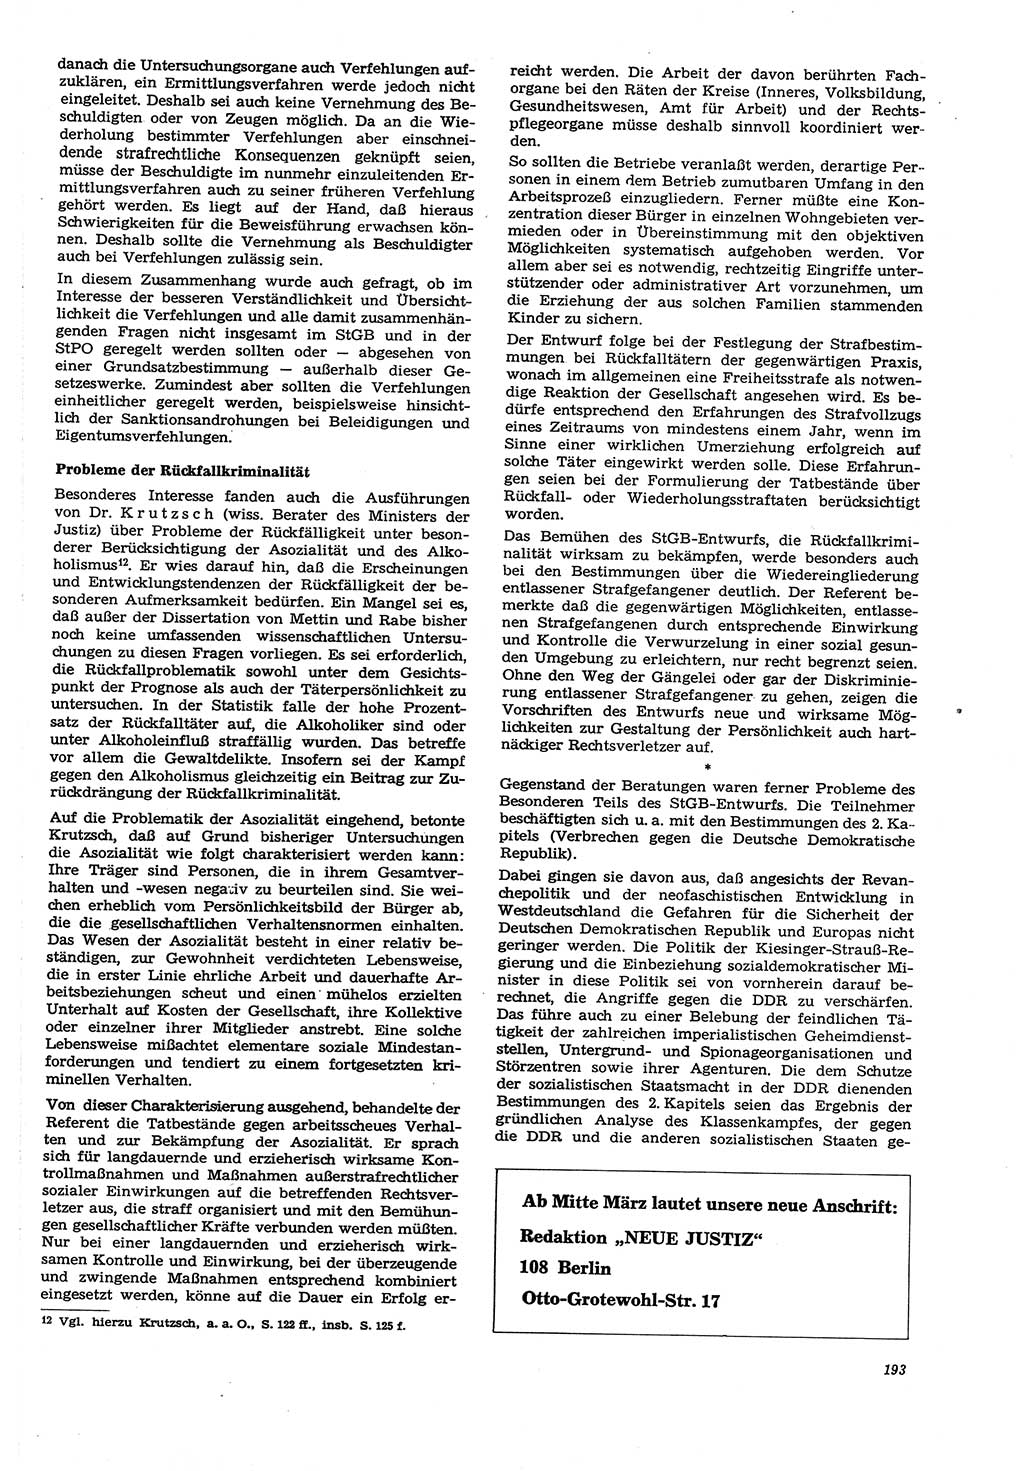 Neue Justiz (NJ), Zeitschrift für Recht und Rechtswissenschaft [Deutsche Demokratische Republik (DDR)], 21. Jahrgang 1967, Seite 193 (NJ DDR 1967, S. 193)